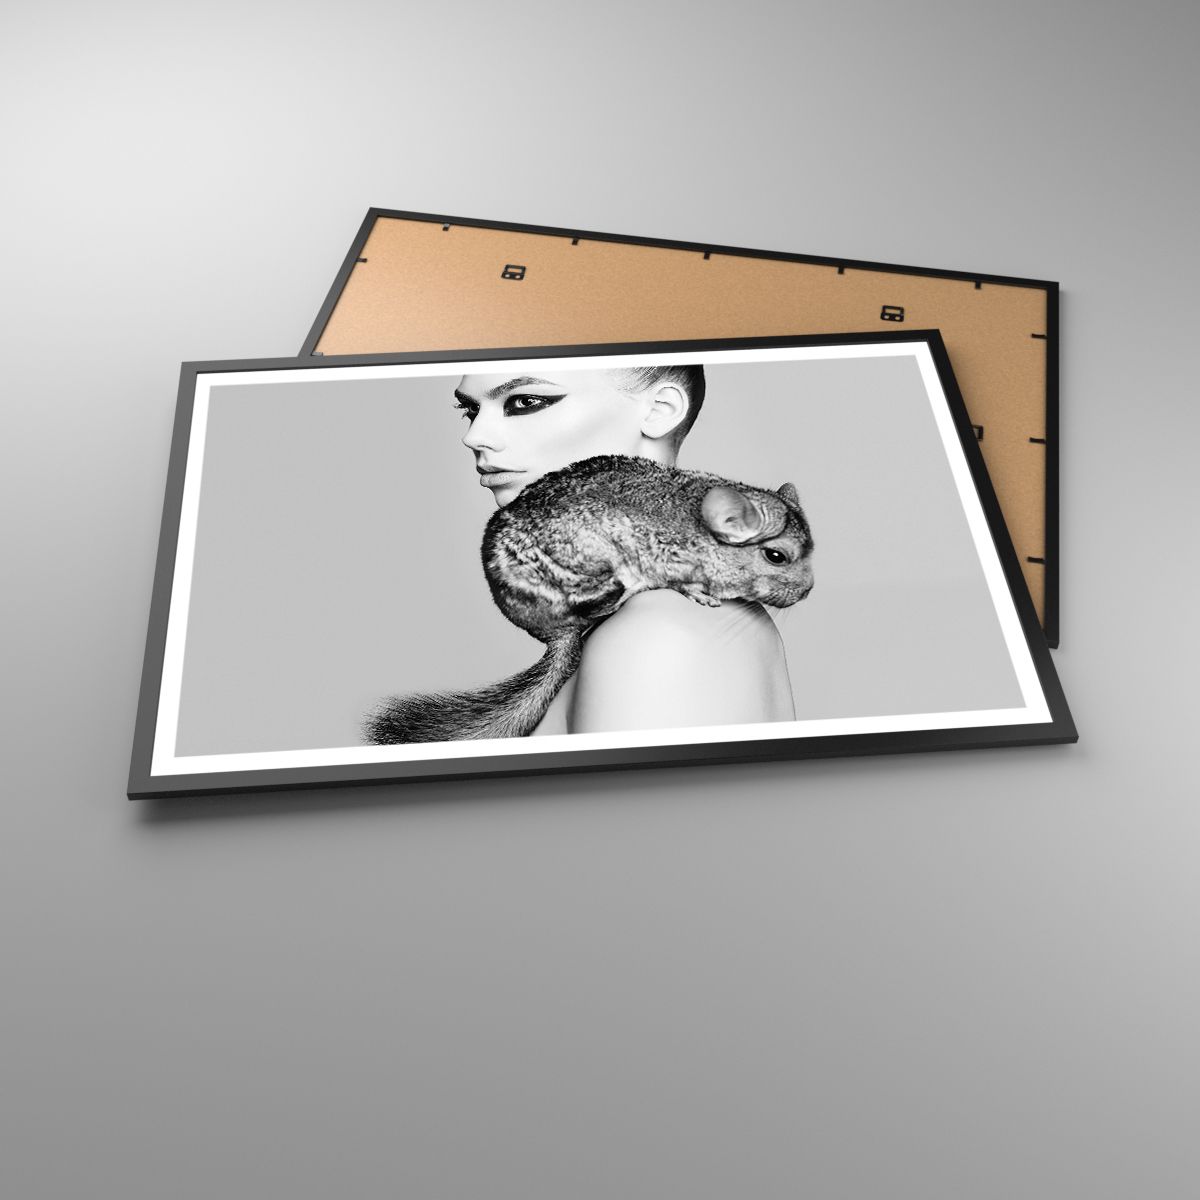 Plakat Kvinde, Plakat Kvinde med chinchilla, Plakat Model, Plakat Kunst, Plakat Sort og hvid